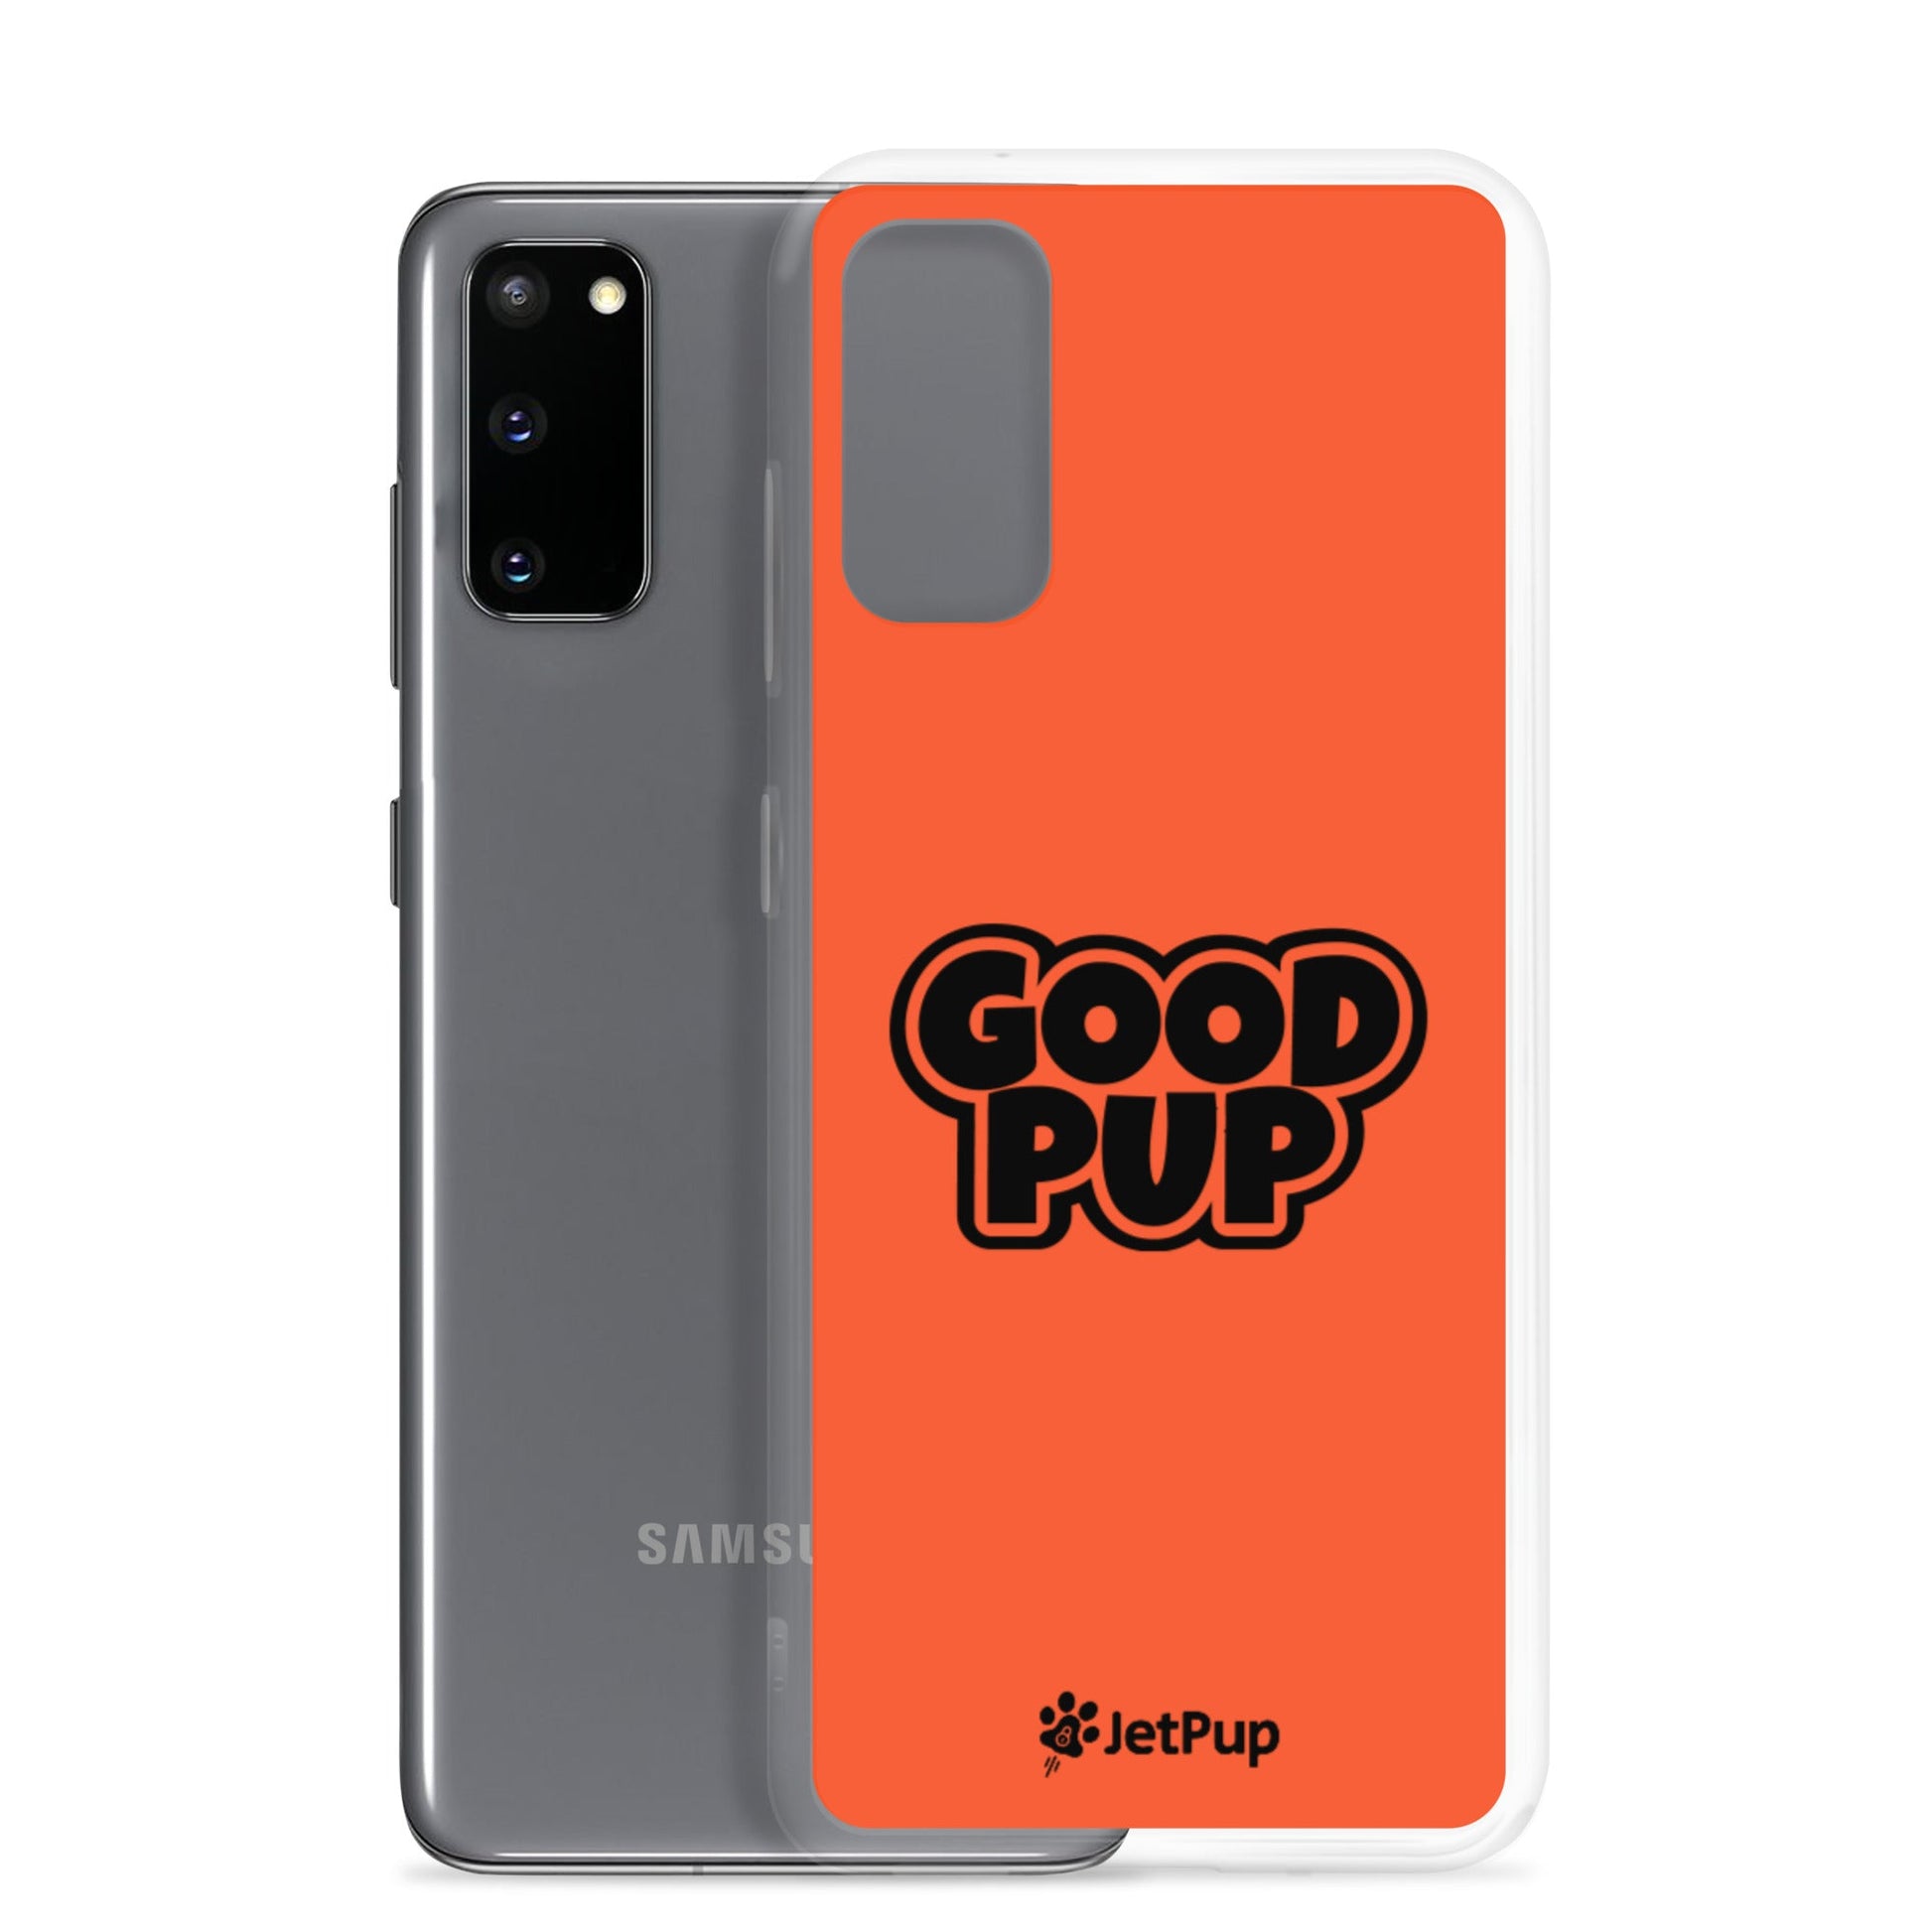 Good Pup Samsung Case - Orange - JetPup